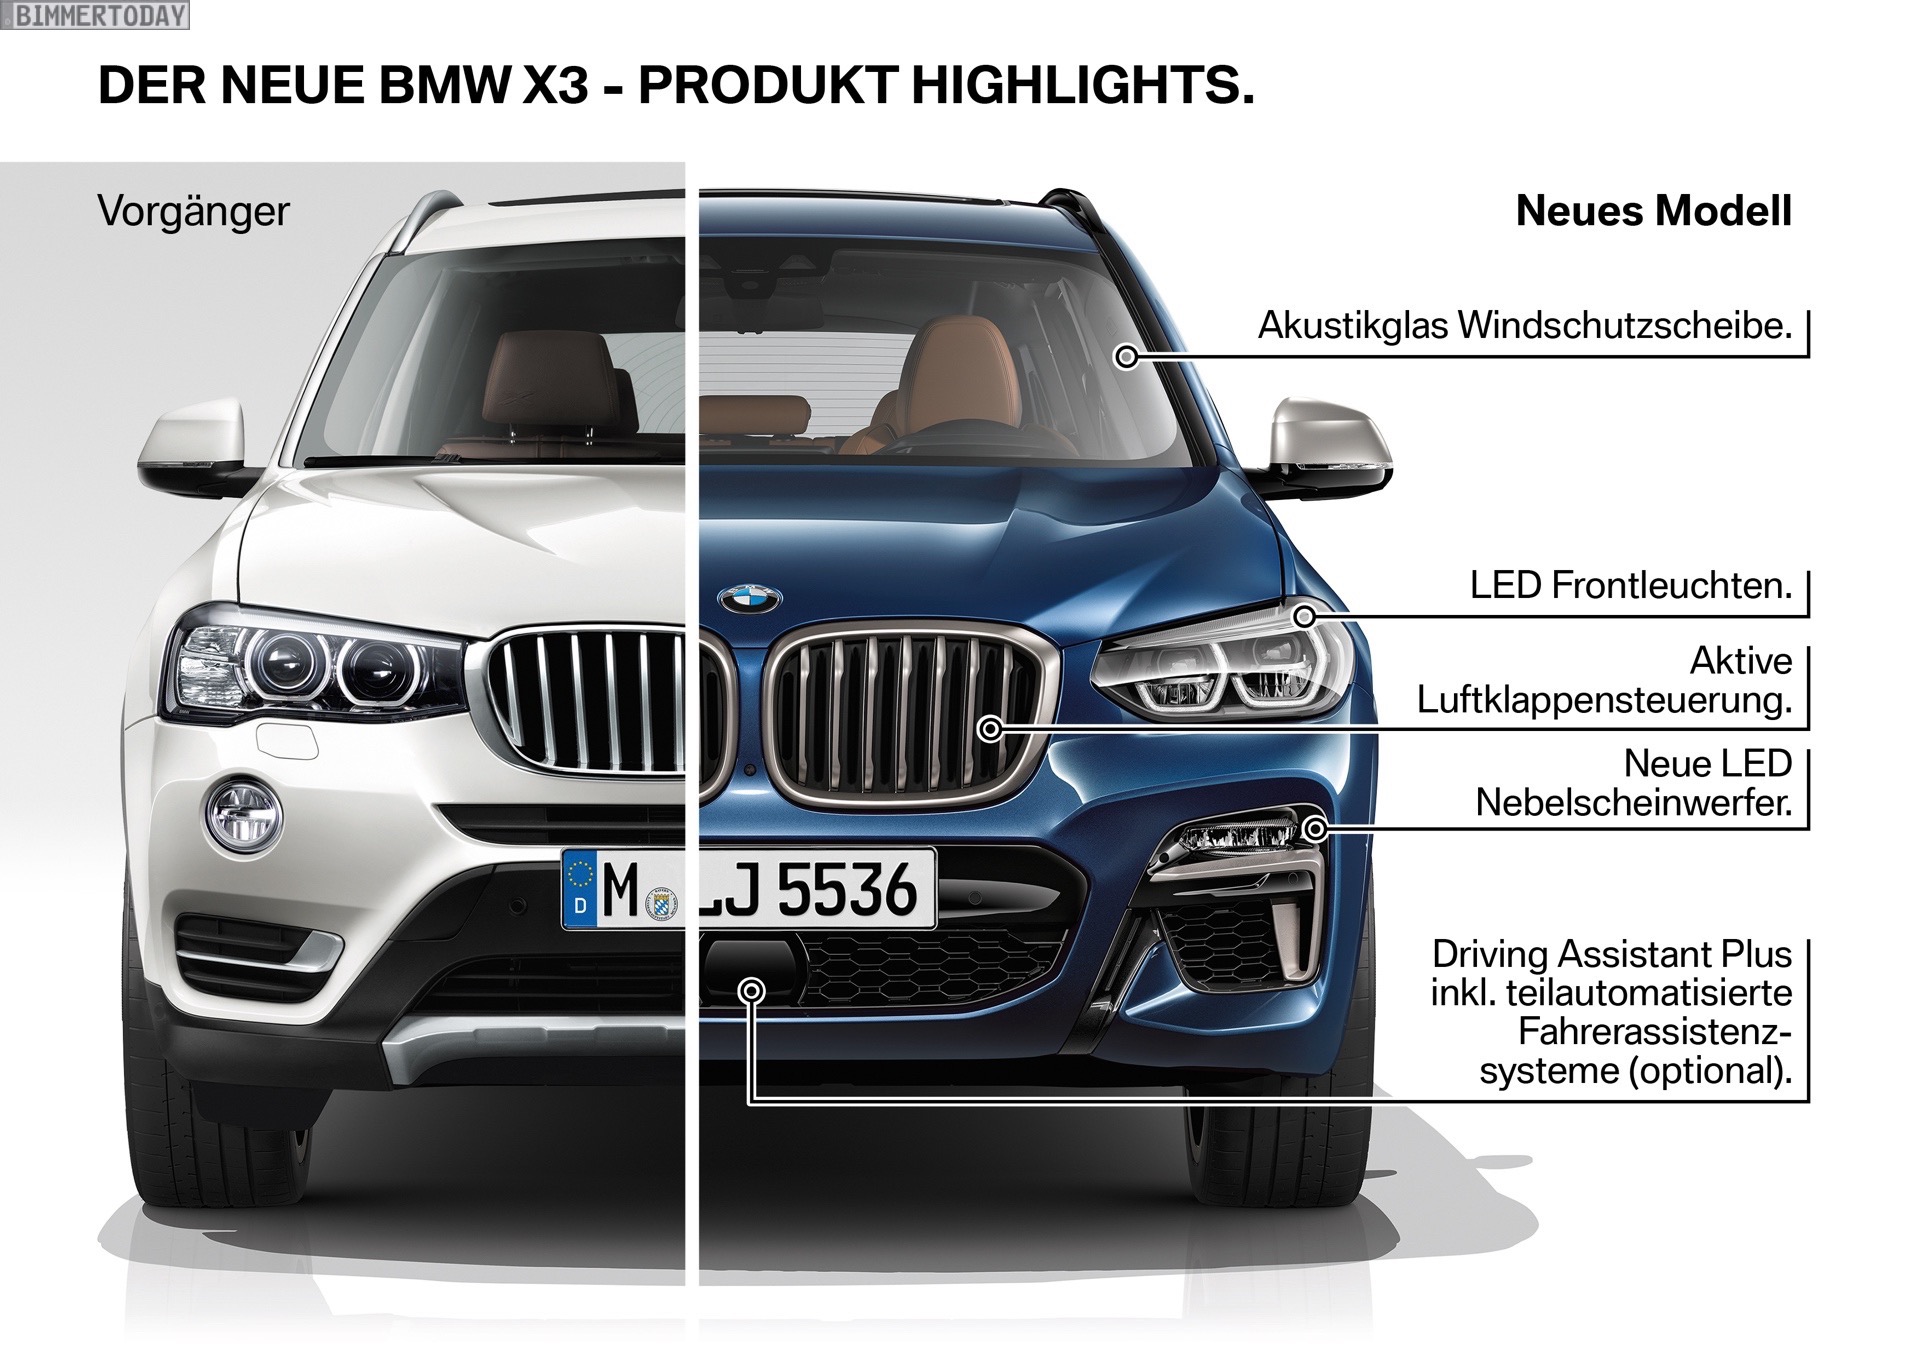 Bild-Vergleich: BMW X3 G01 xLine trifft Vorgänger F25 LCI